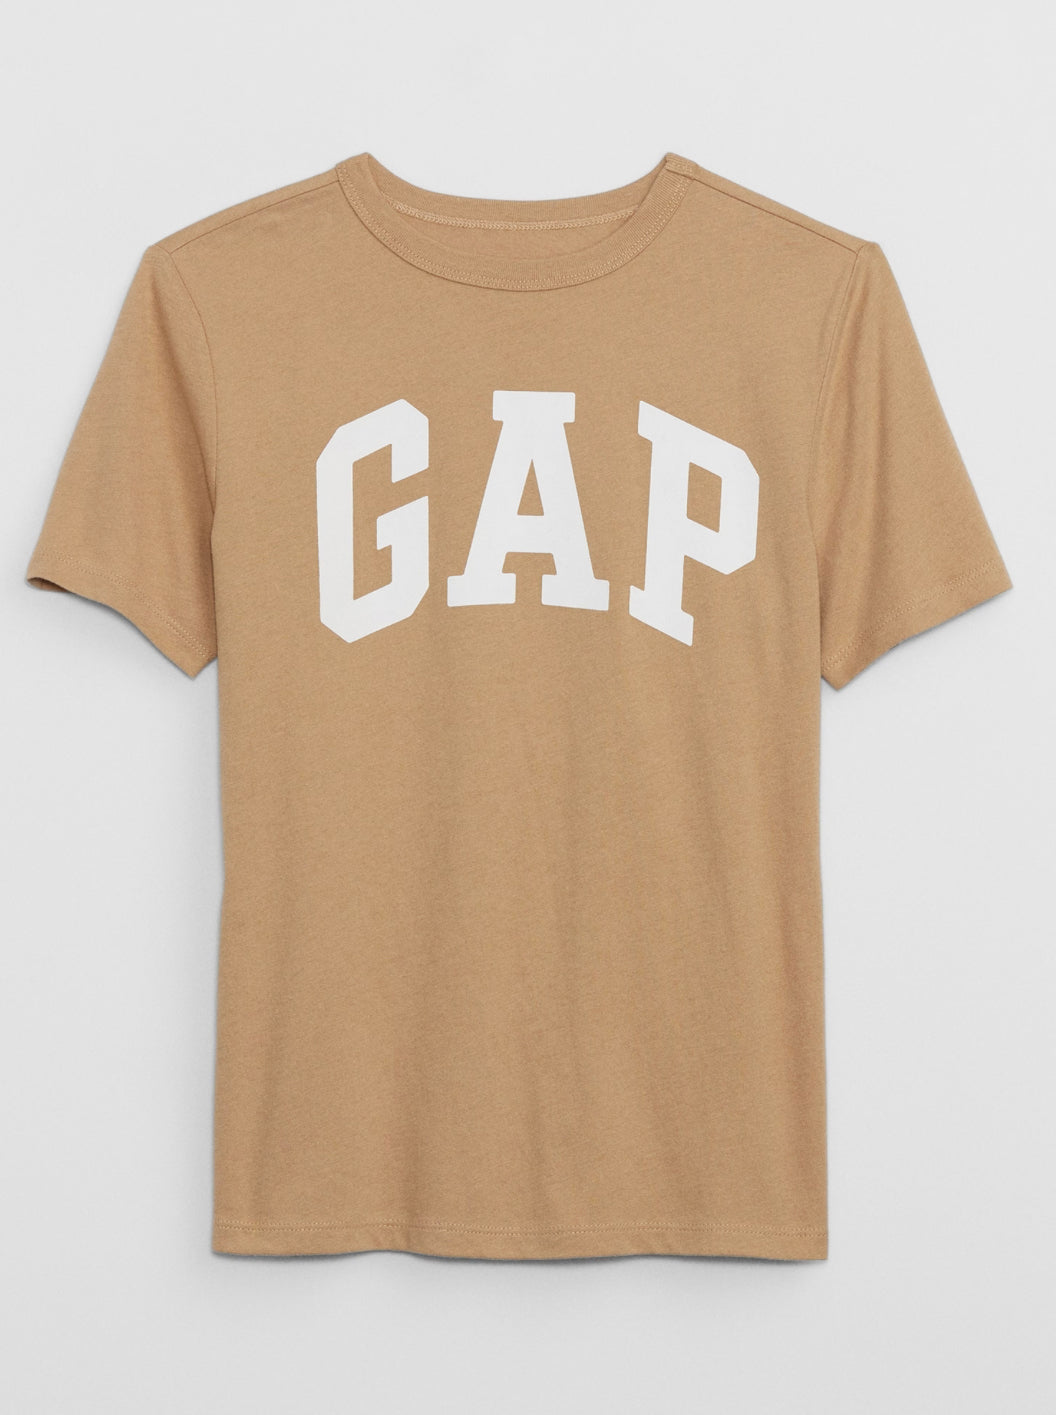 Gap shirt